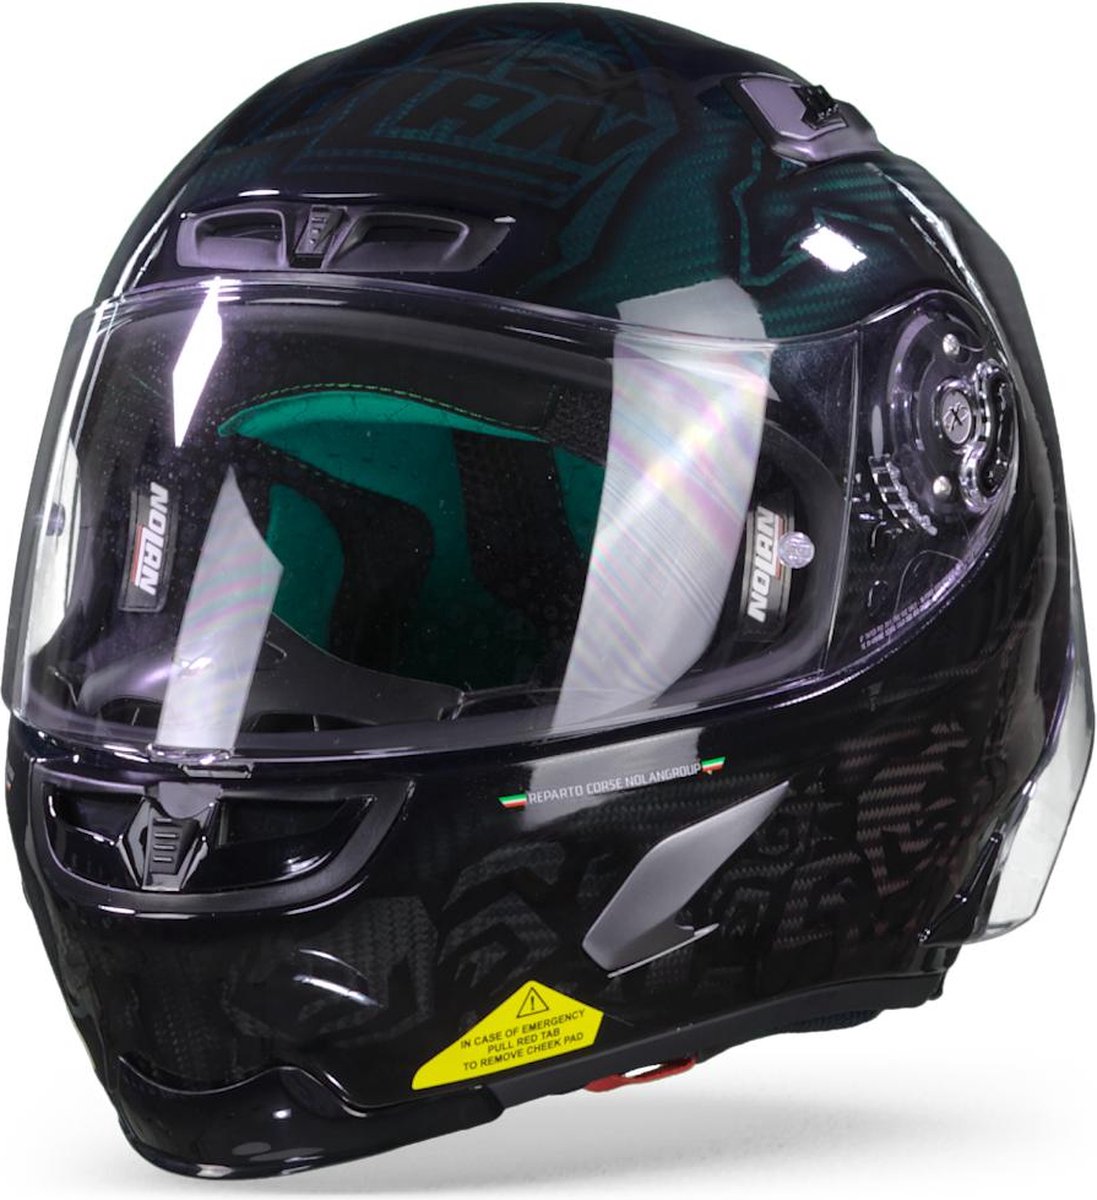 X-Lite X-803 RS 025 C. Stoner SuperHero Black Green Red Full Face Helmet S